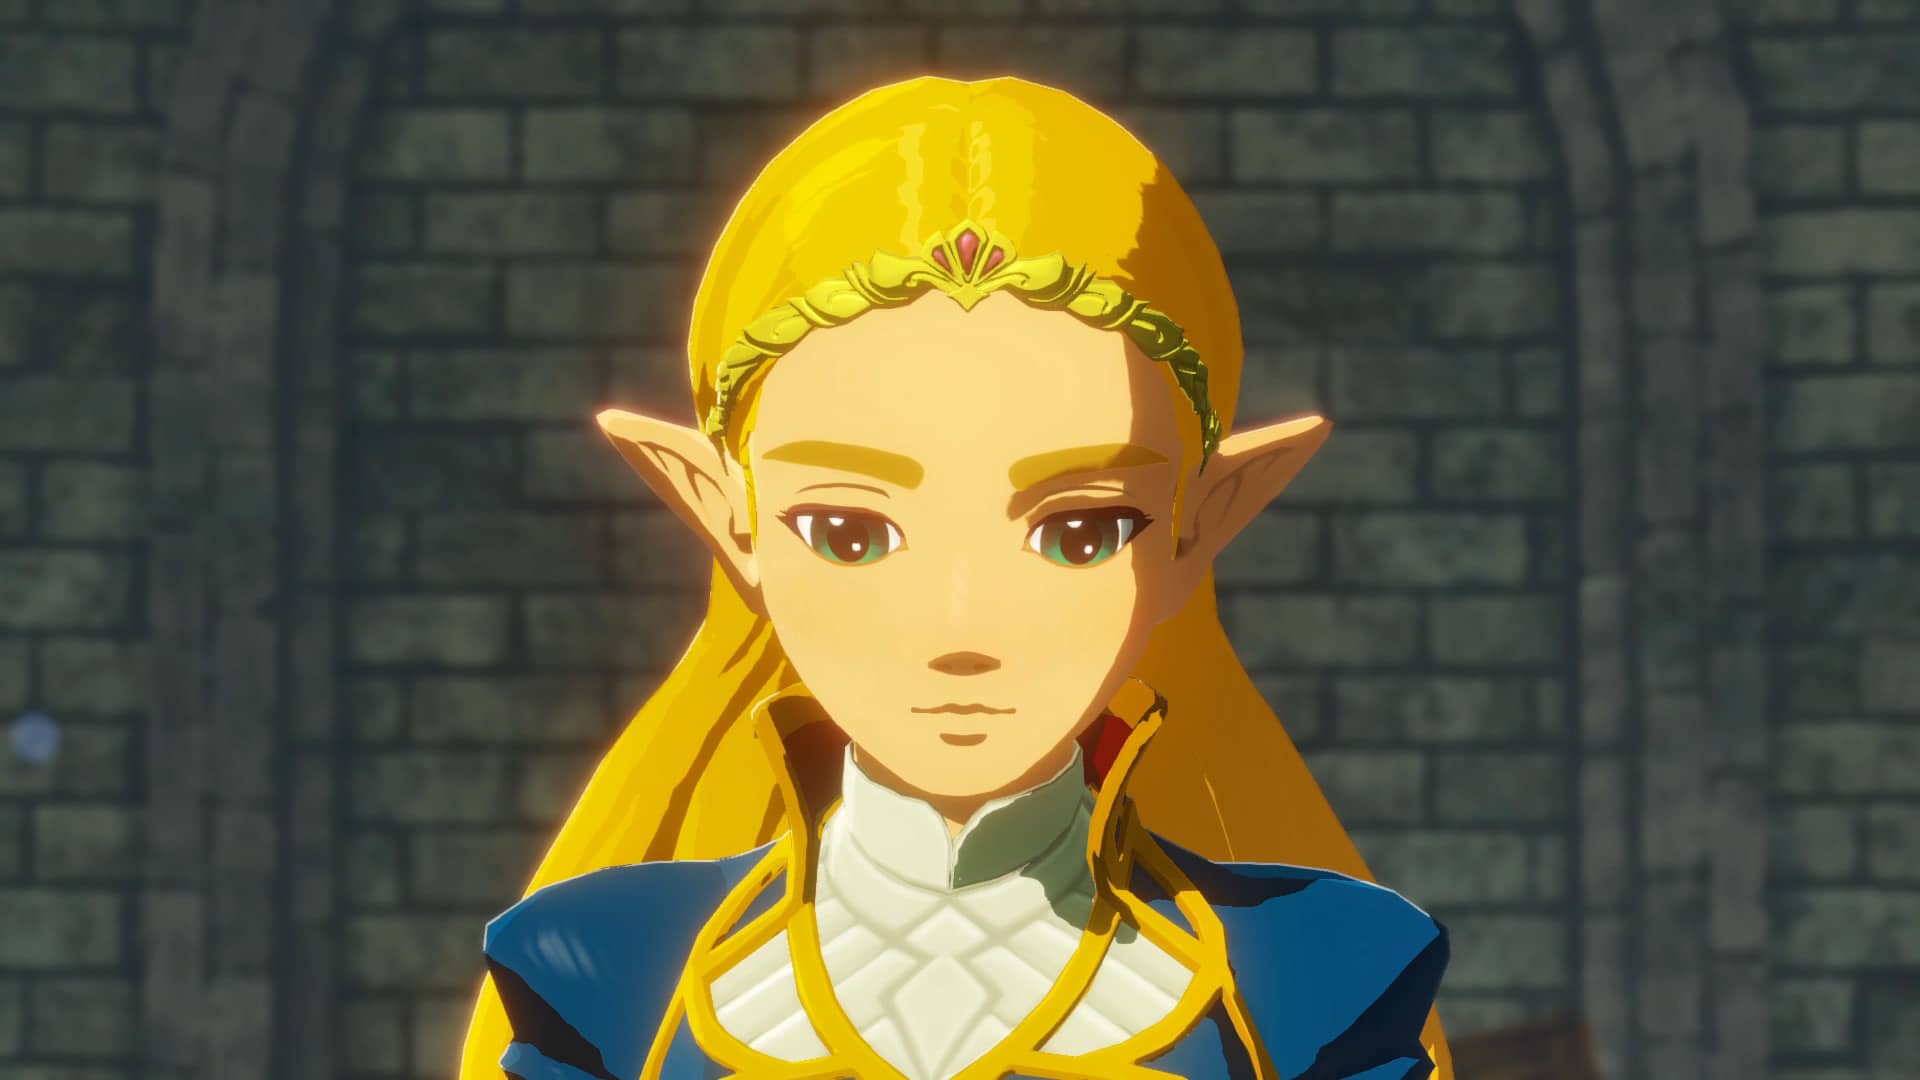 Espectacular cosplay de la princesa Zelda en Breath of the Wild